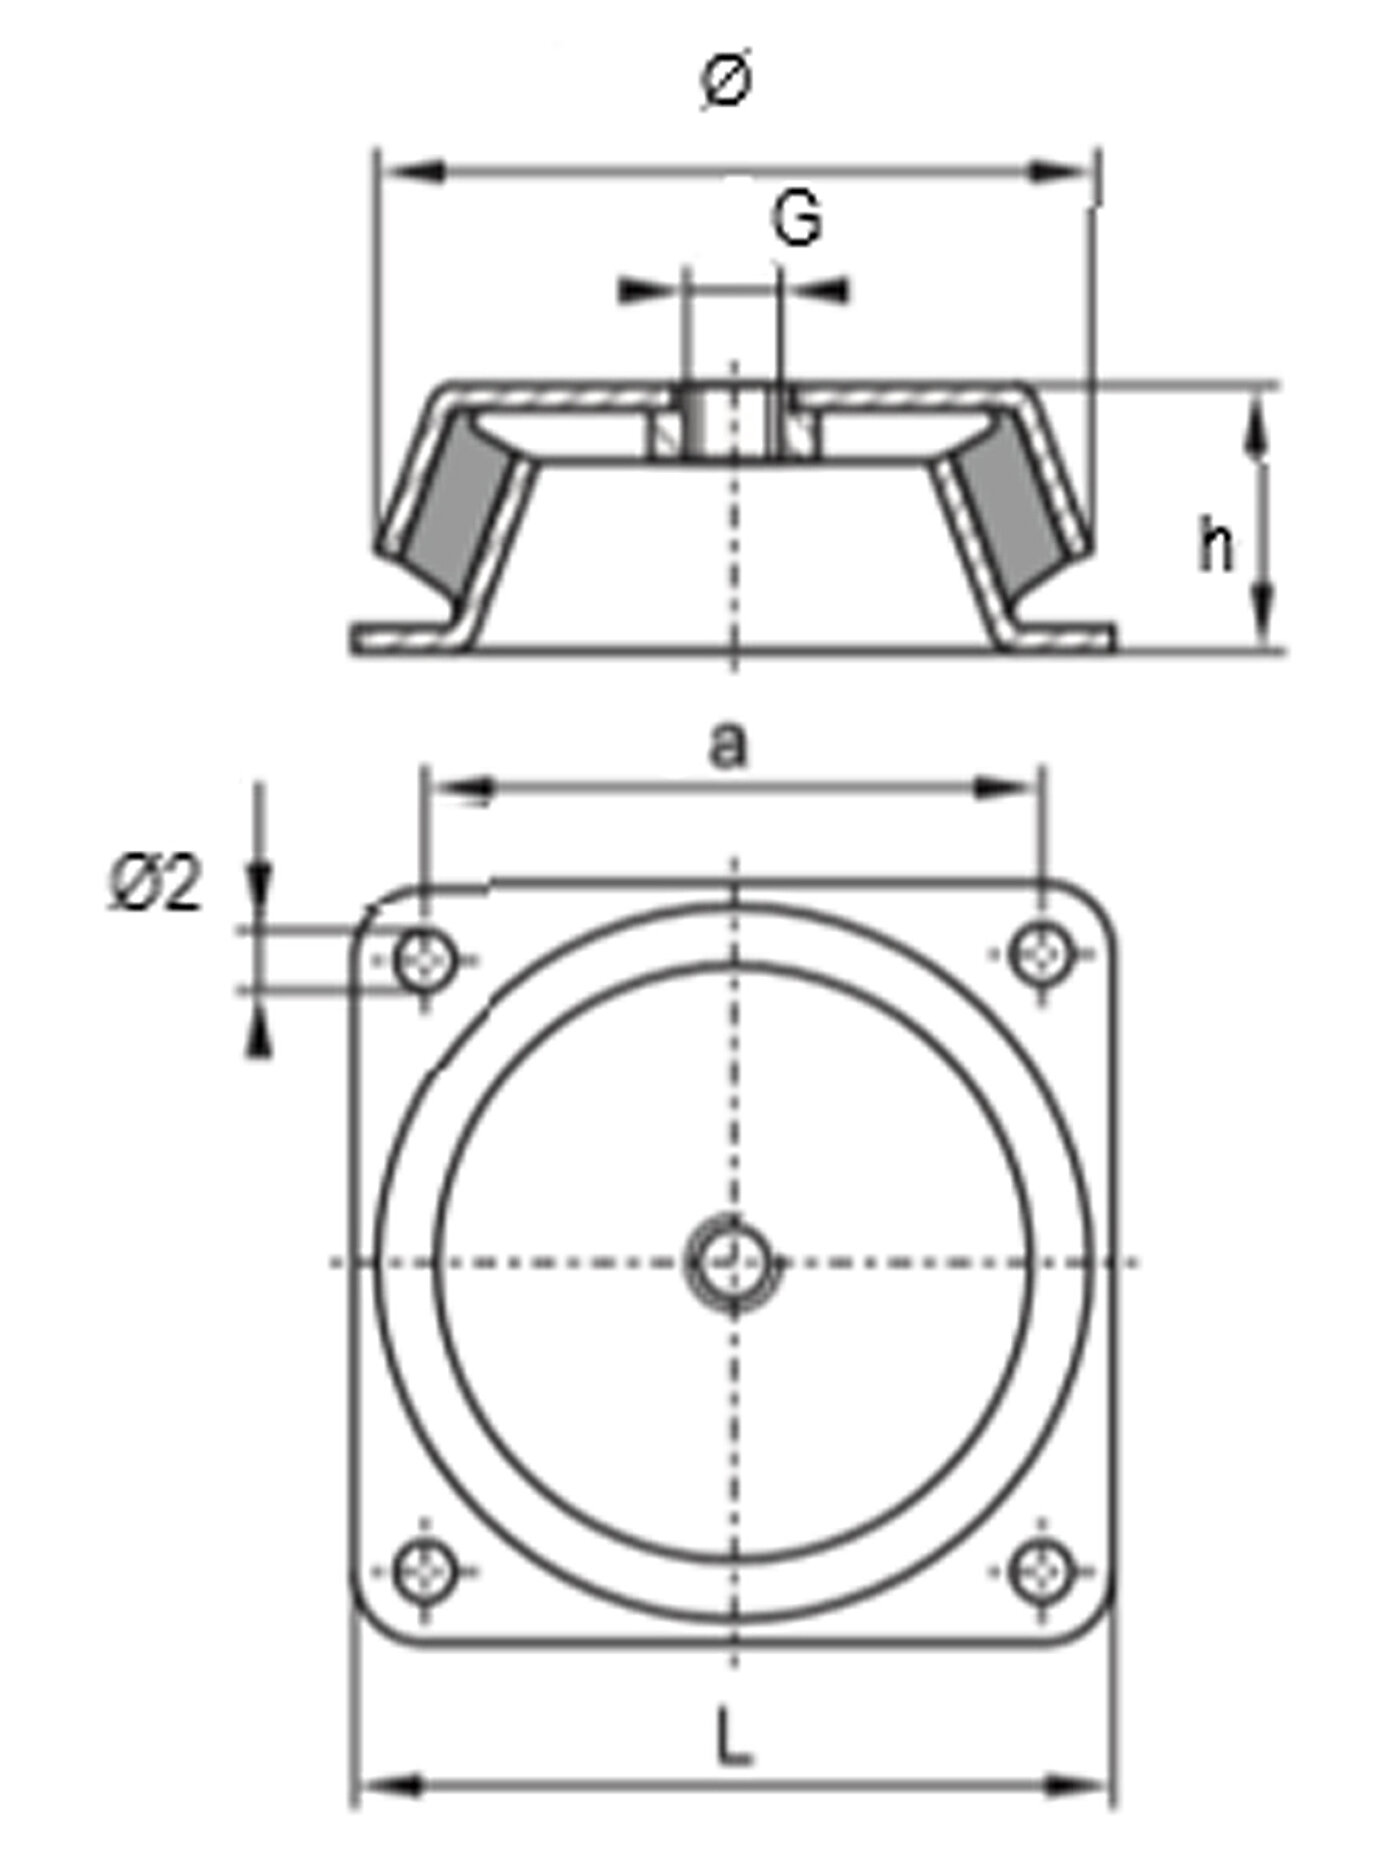 schematische Zeichnung eines Schwingungsdämpfers aus Metall mit quadratischer Bodenplatte, vier Rundlöchern zur Bodenbefestigung, einer glockenförmigen Metallkappe mit Einschraubgewinde und dazwischen einvulkanisiertem Gummi in der Seitenansicht und Draufsicht